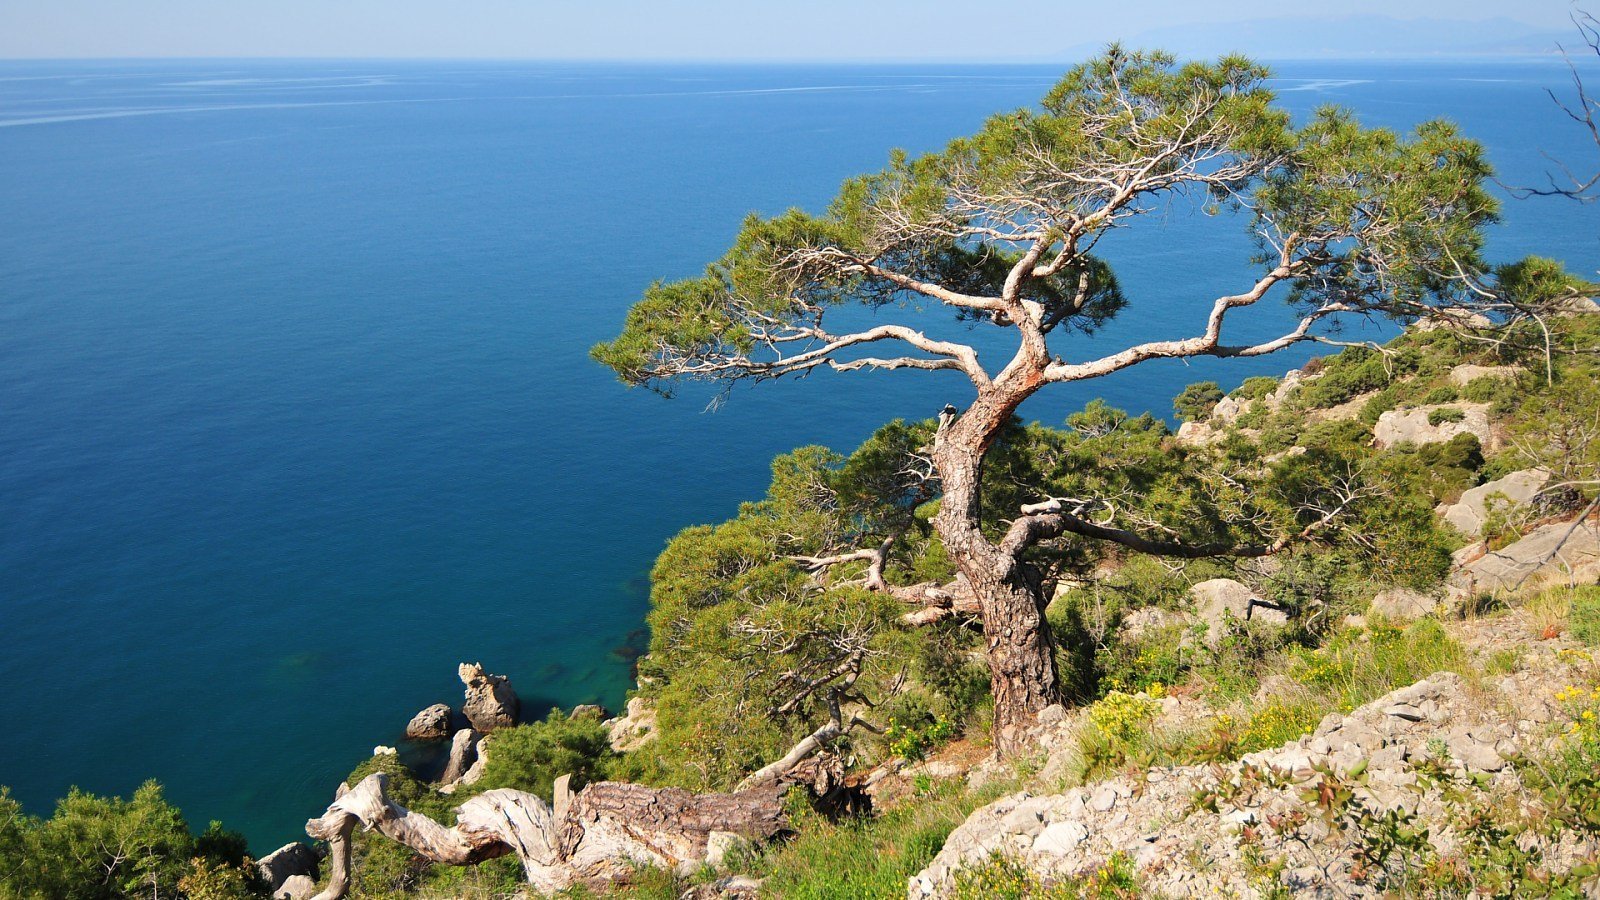 Деревья у черного моря